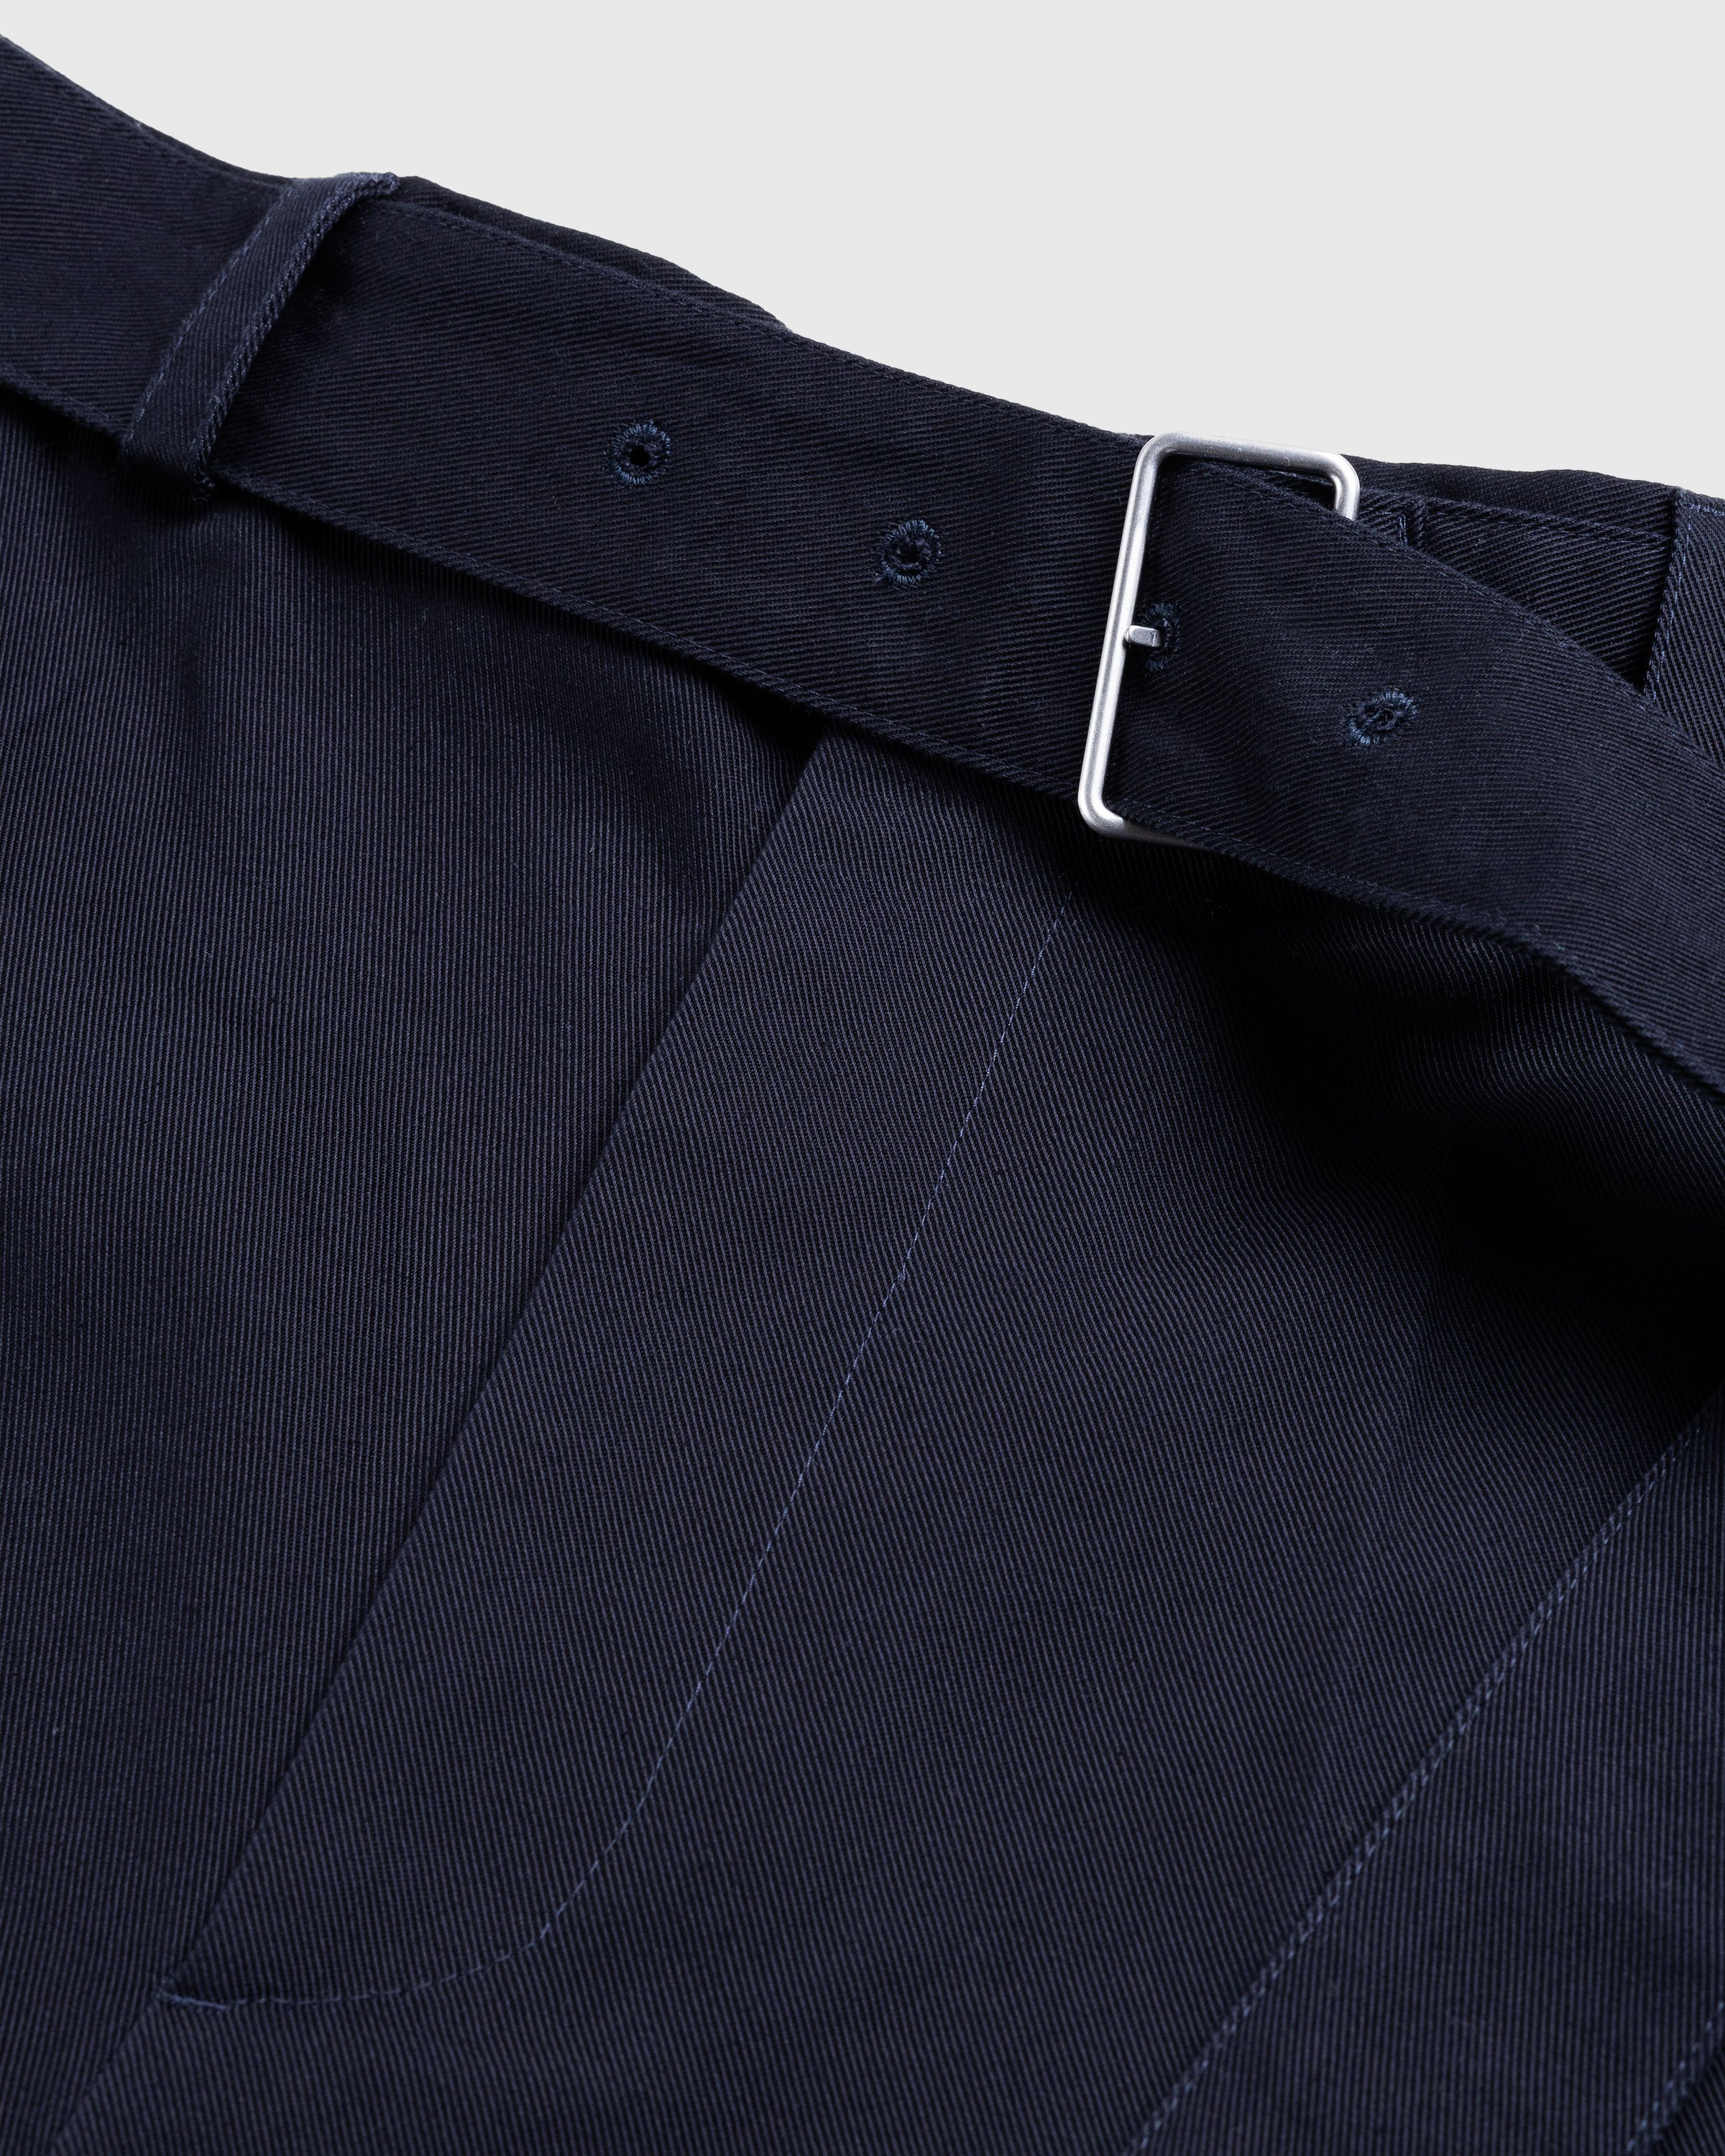 Jil Sander - Belted Shorts Navy - Clothing - Blue - Image 5